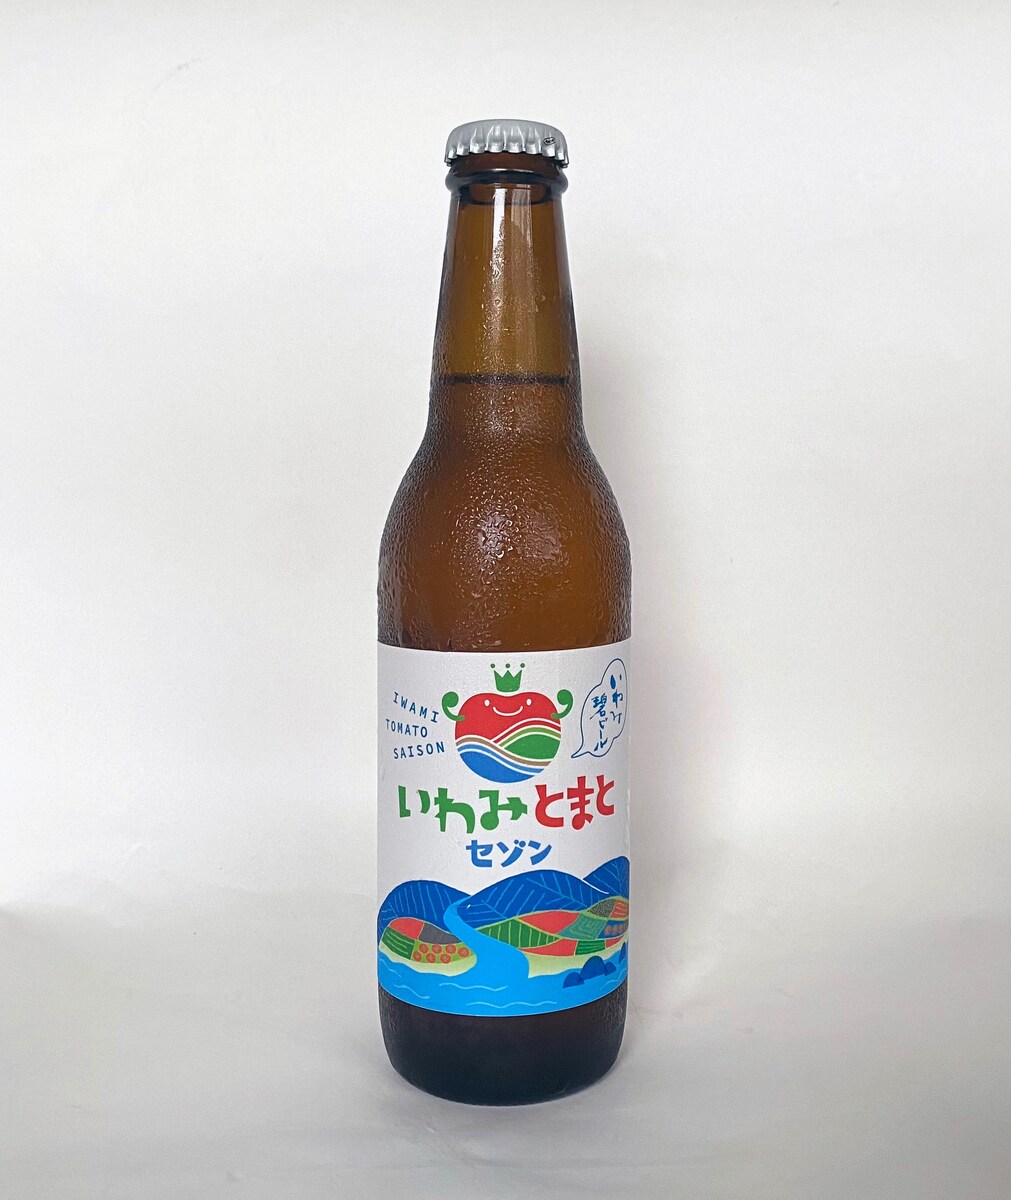 鳥取県岩美町クラフトビール「いわみとまとセゾン」